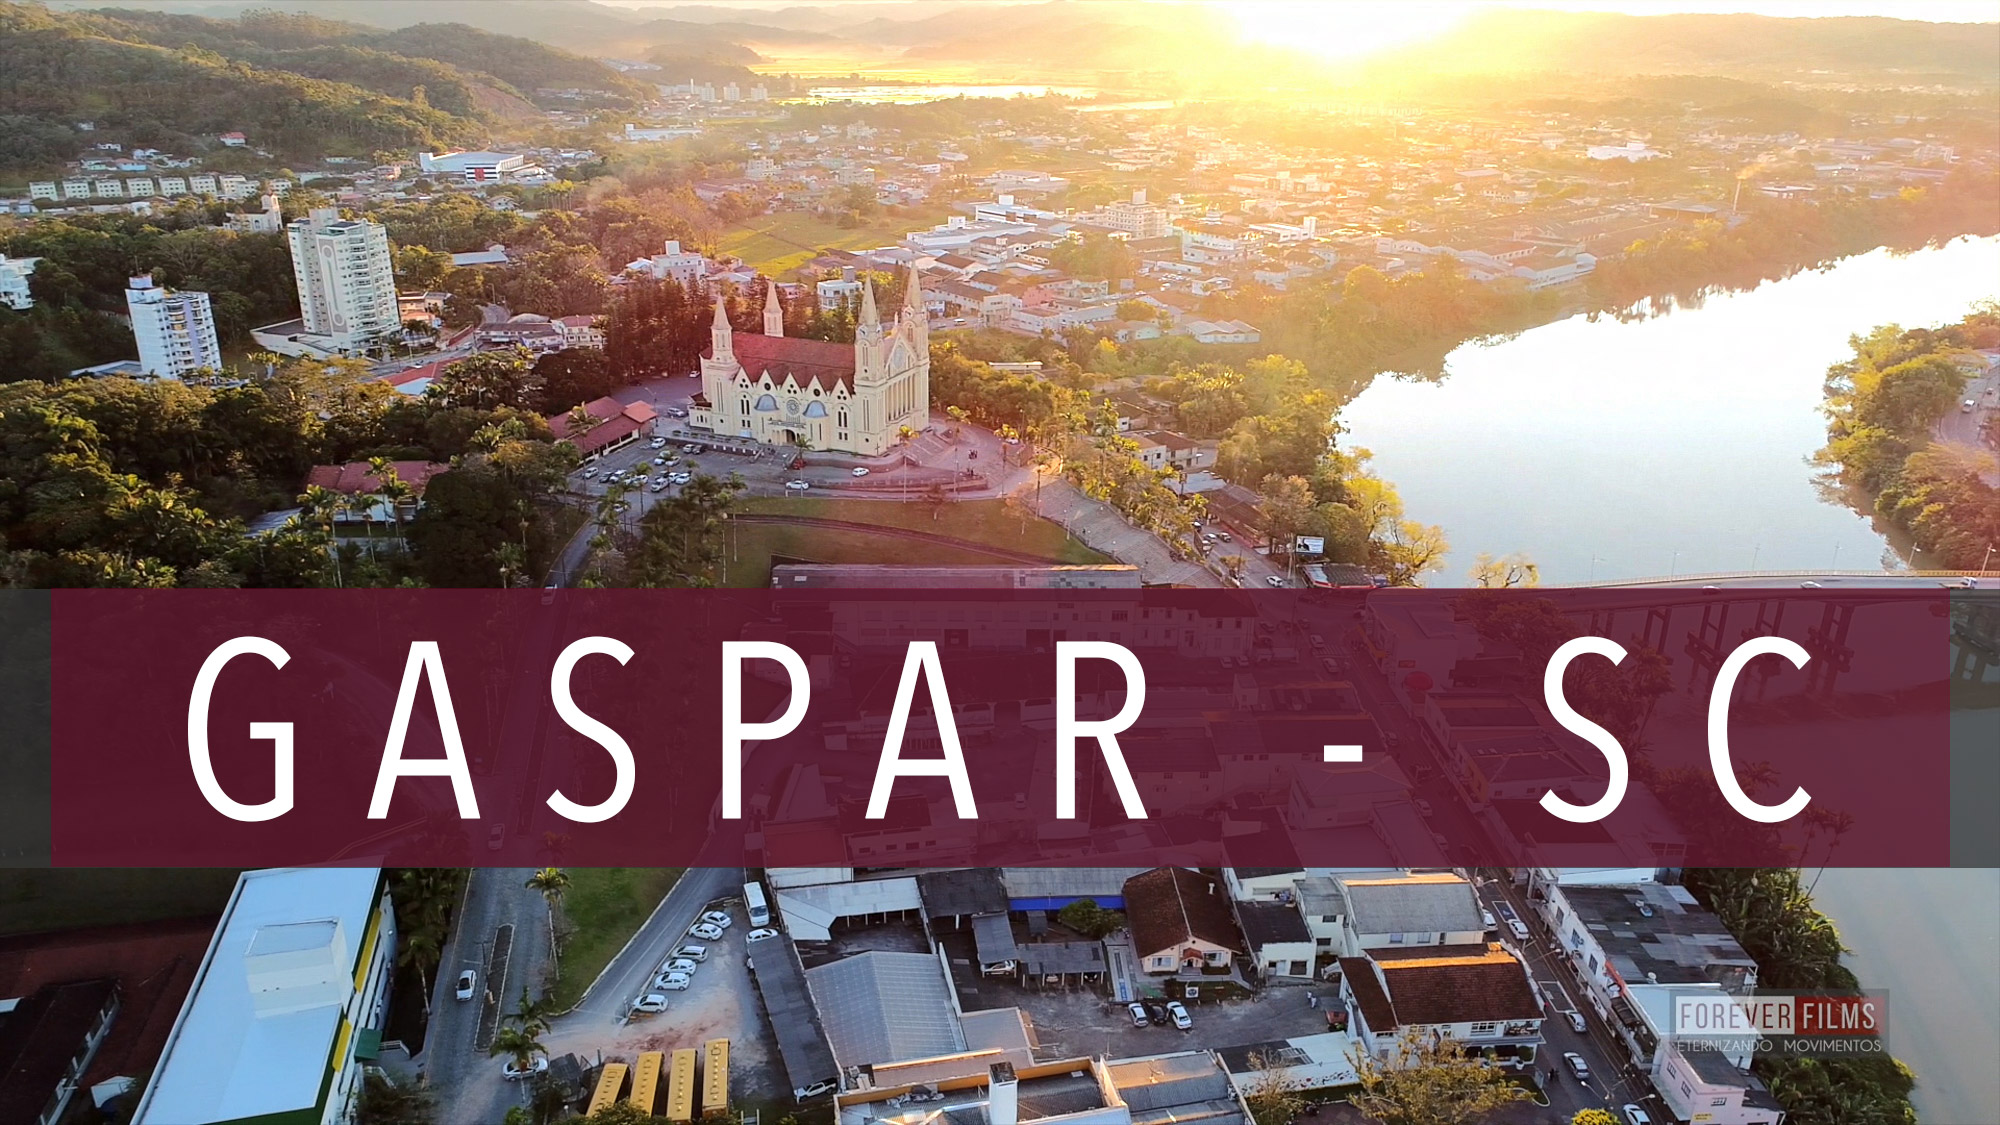 Gaspar - SC, Uma cidade localizada no Vale do Itajaí